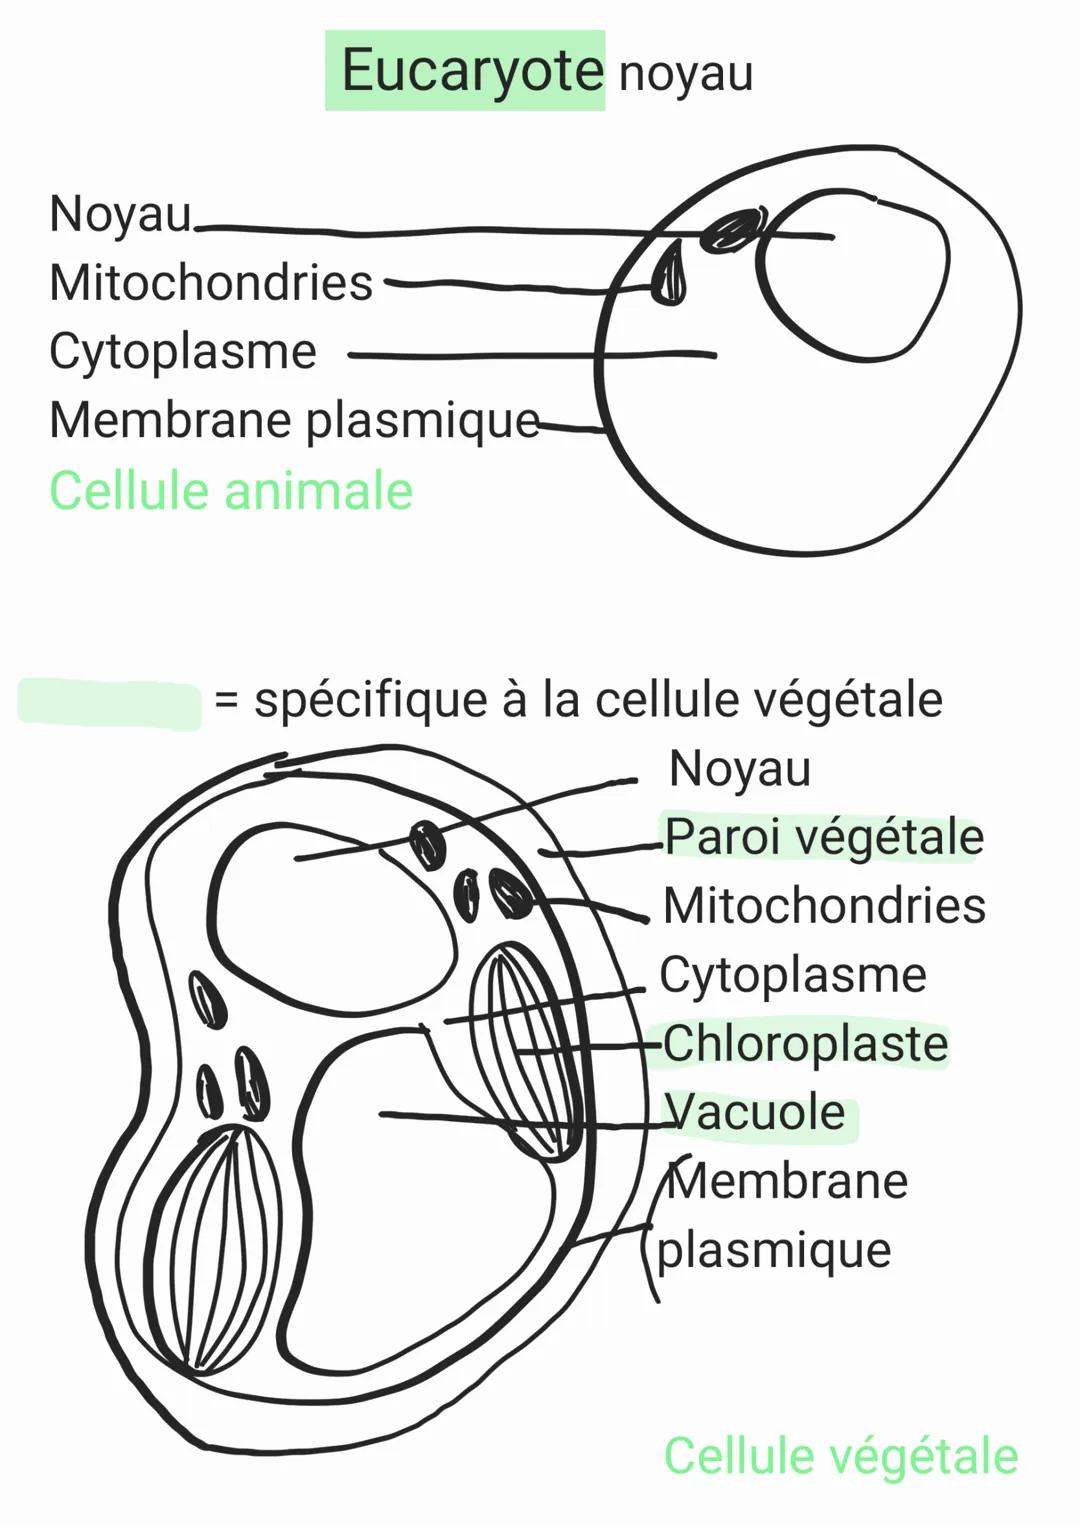 Unicellulaire = 1 seule cellule
cyraplasme
Chap 2
Organisme pluricellulaire
Paramécie
∙nayan
•membrane plasmique
Pluricellulaire = Plusieurs